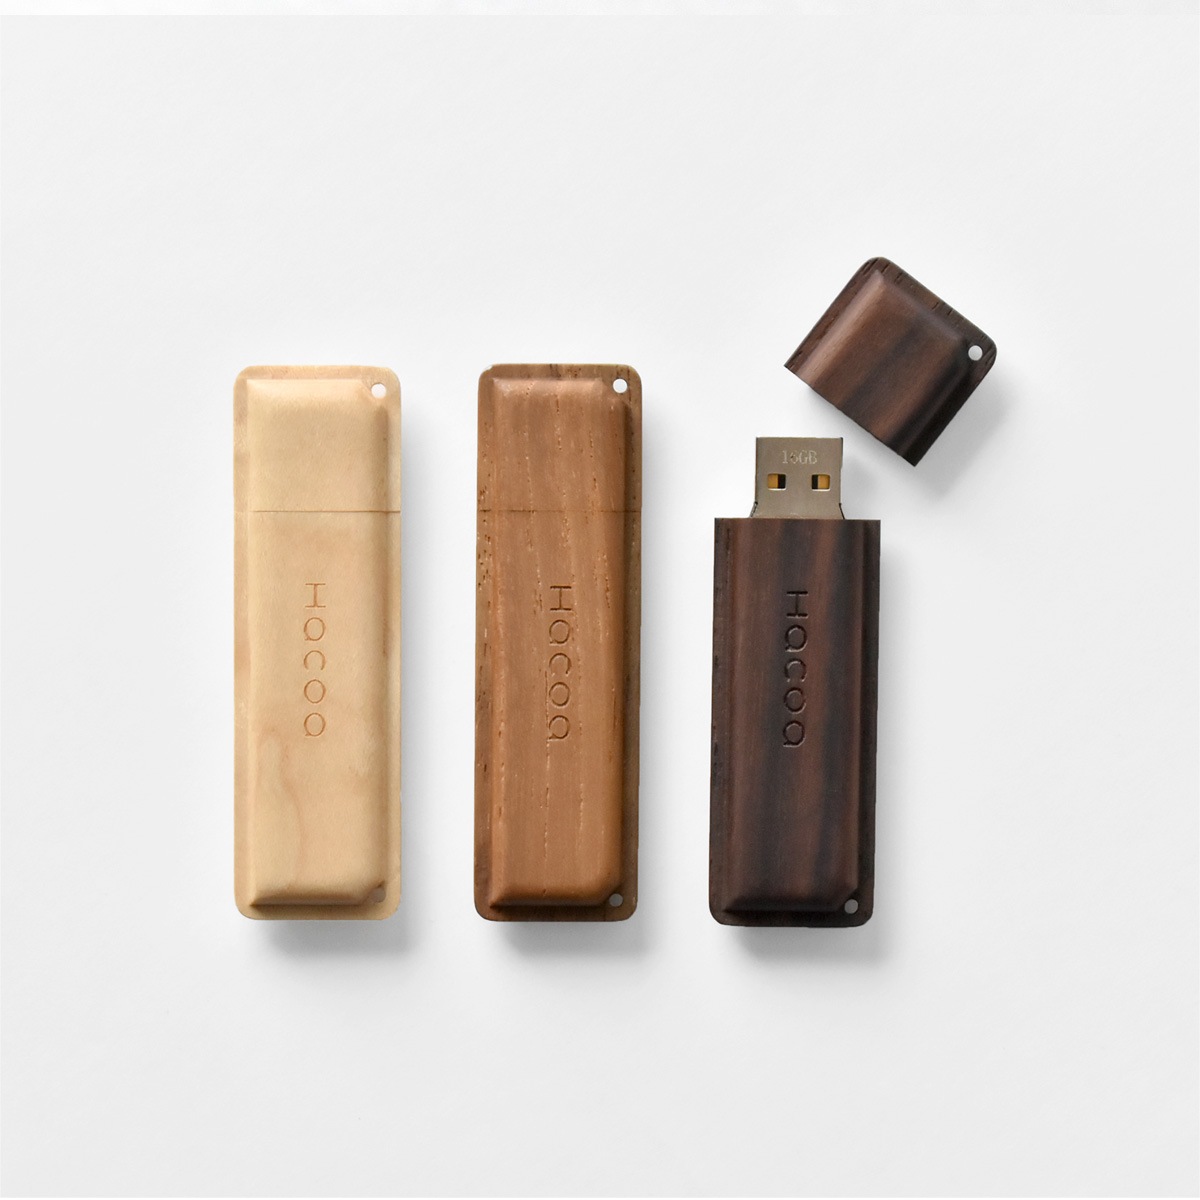 モナカみたいな木製USBメモリ